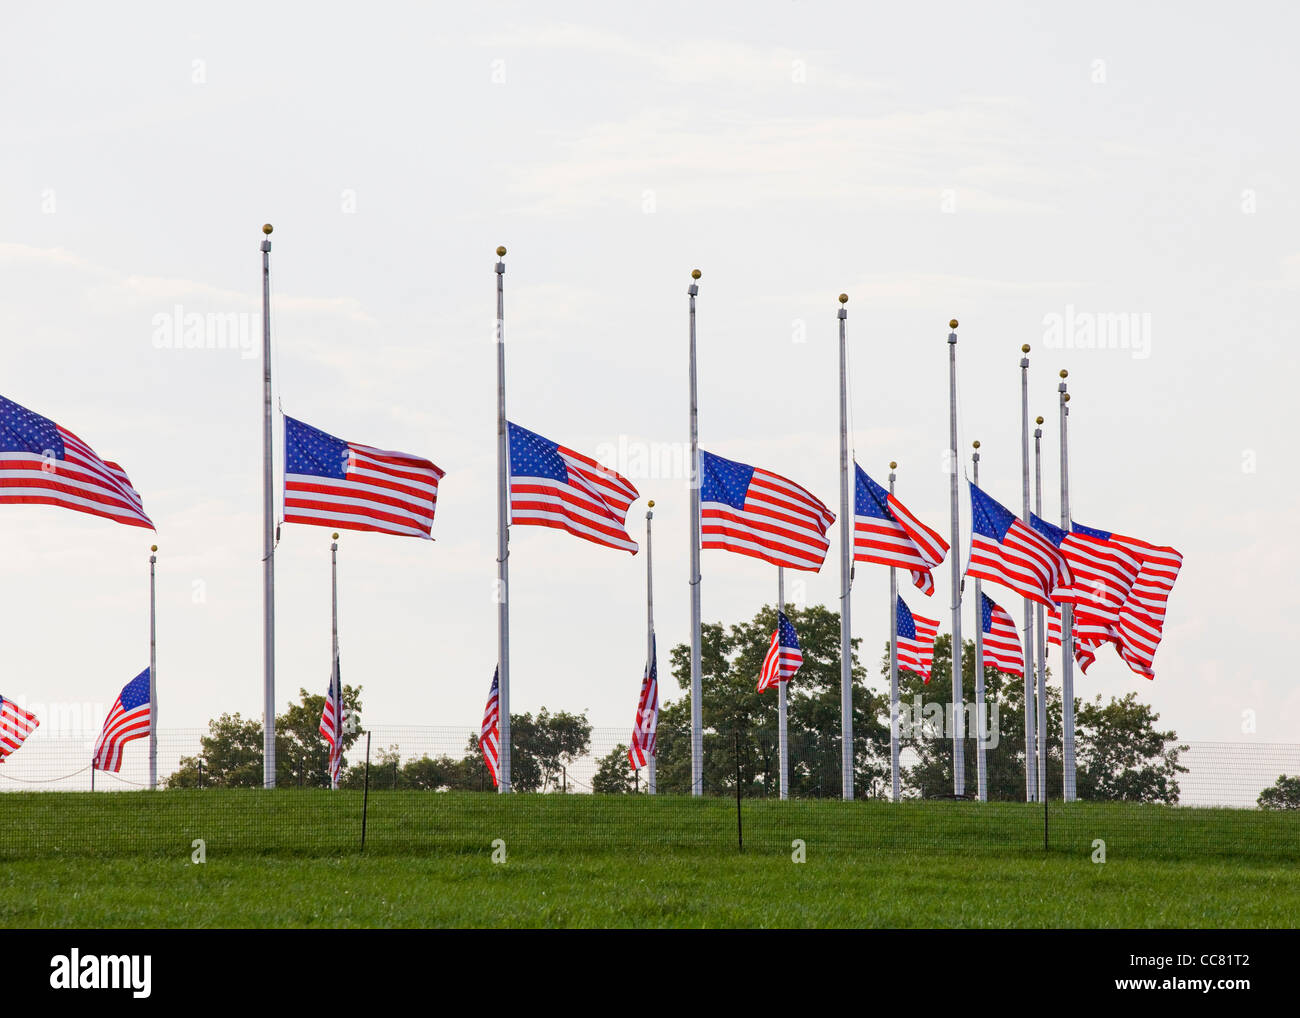 Reihe von US-Flaggen fliegenden Hälfte Mitarbeiter Stockfoto